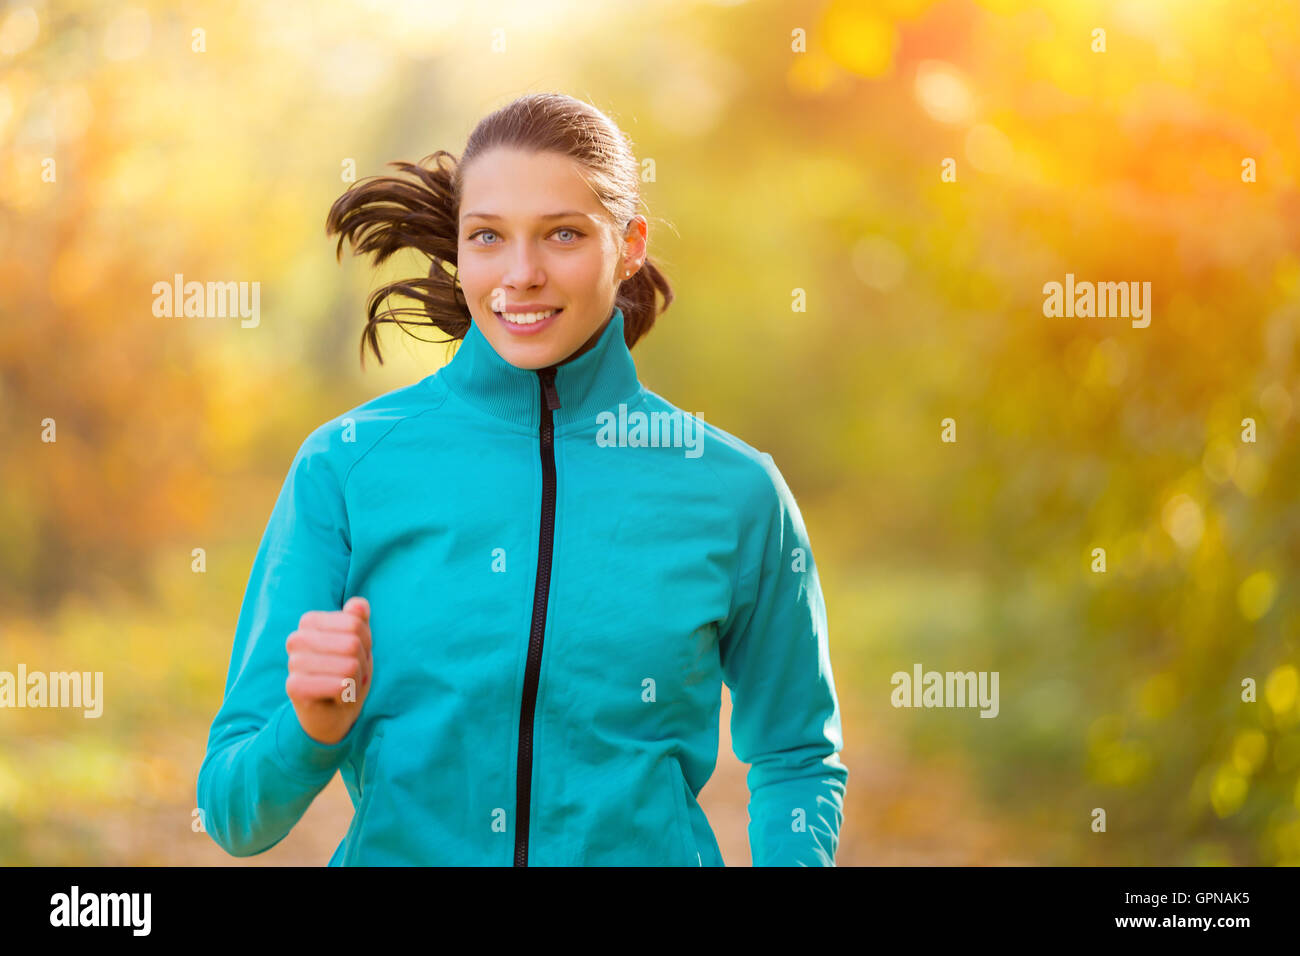 Athlet junge Frau läuft im Sonnenaufgang Morgentraining für Marathon und Fitness. Gesunden, aktiven Lebensstil im freien Stockfoto